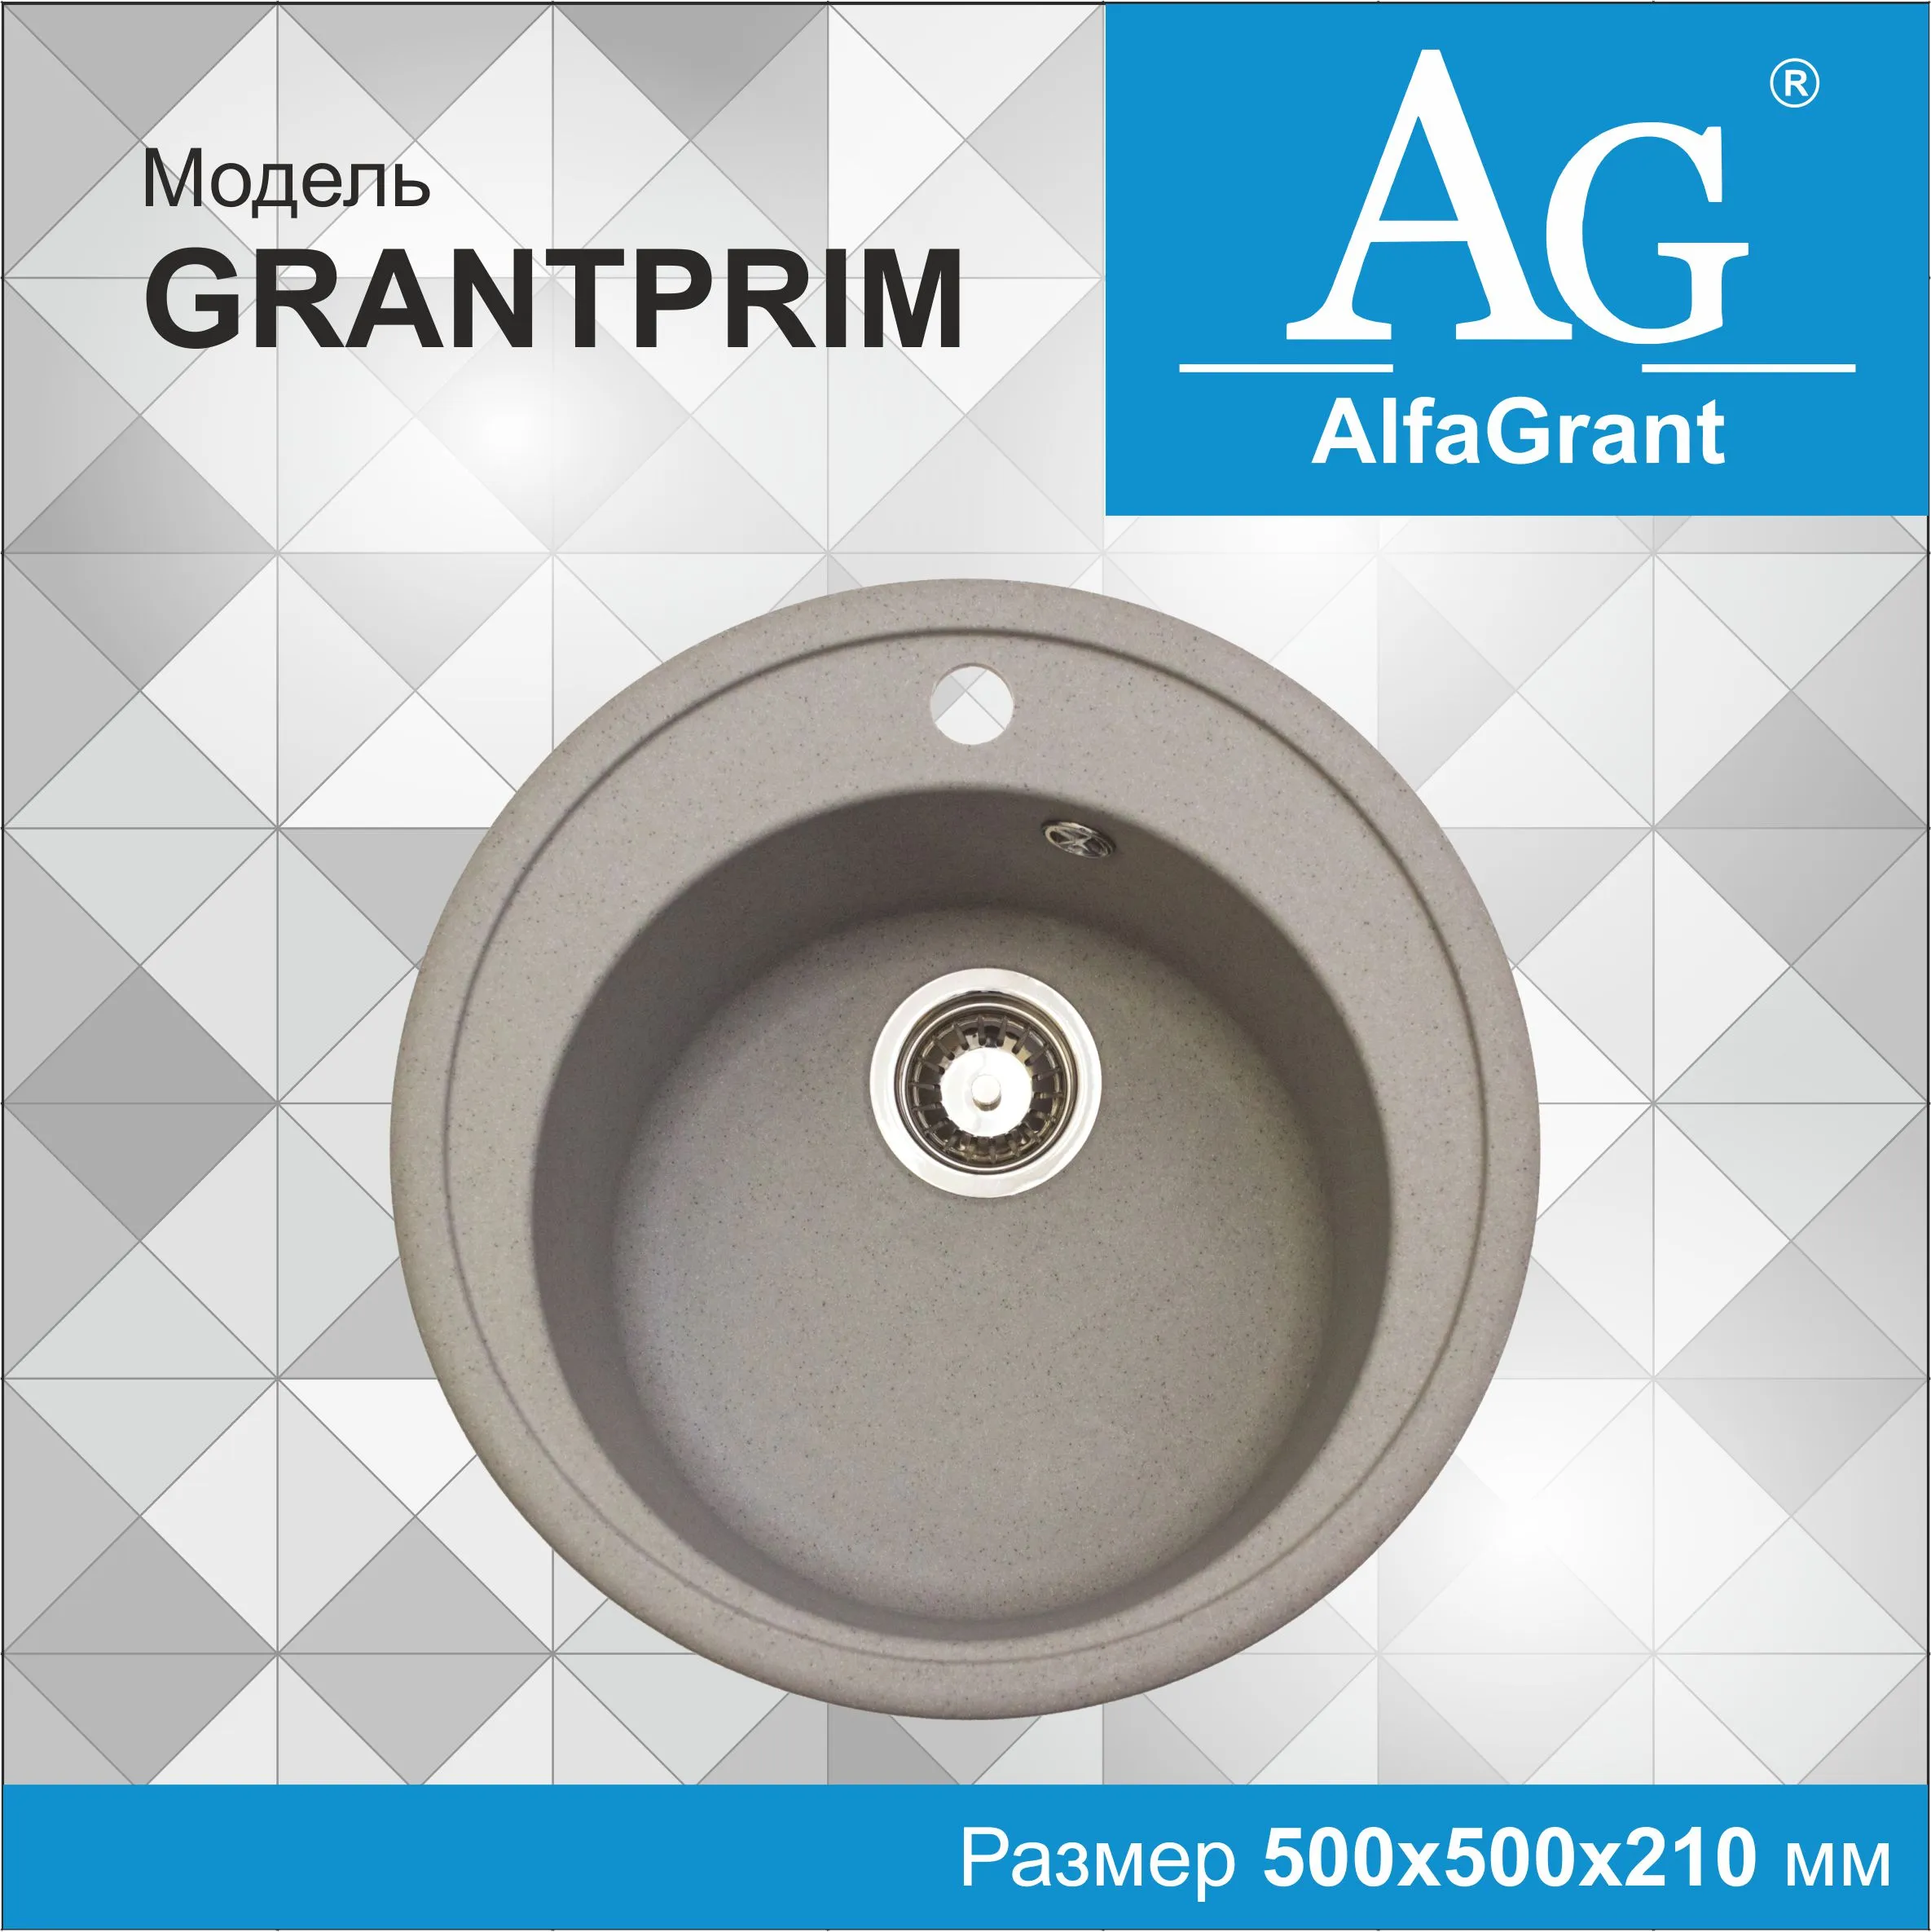 Кухонная мойка AlfaGrant модель GRANTPRIM (AG-002).#1